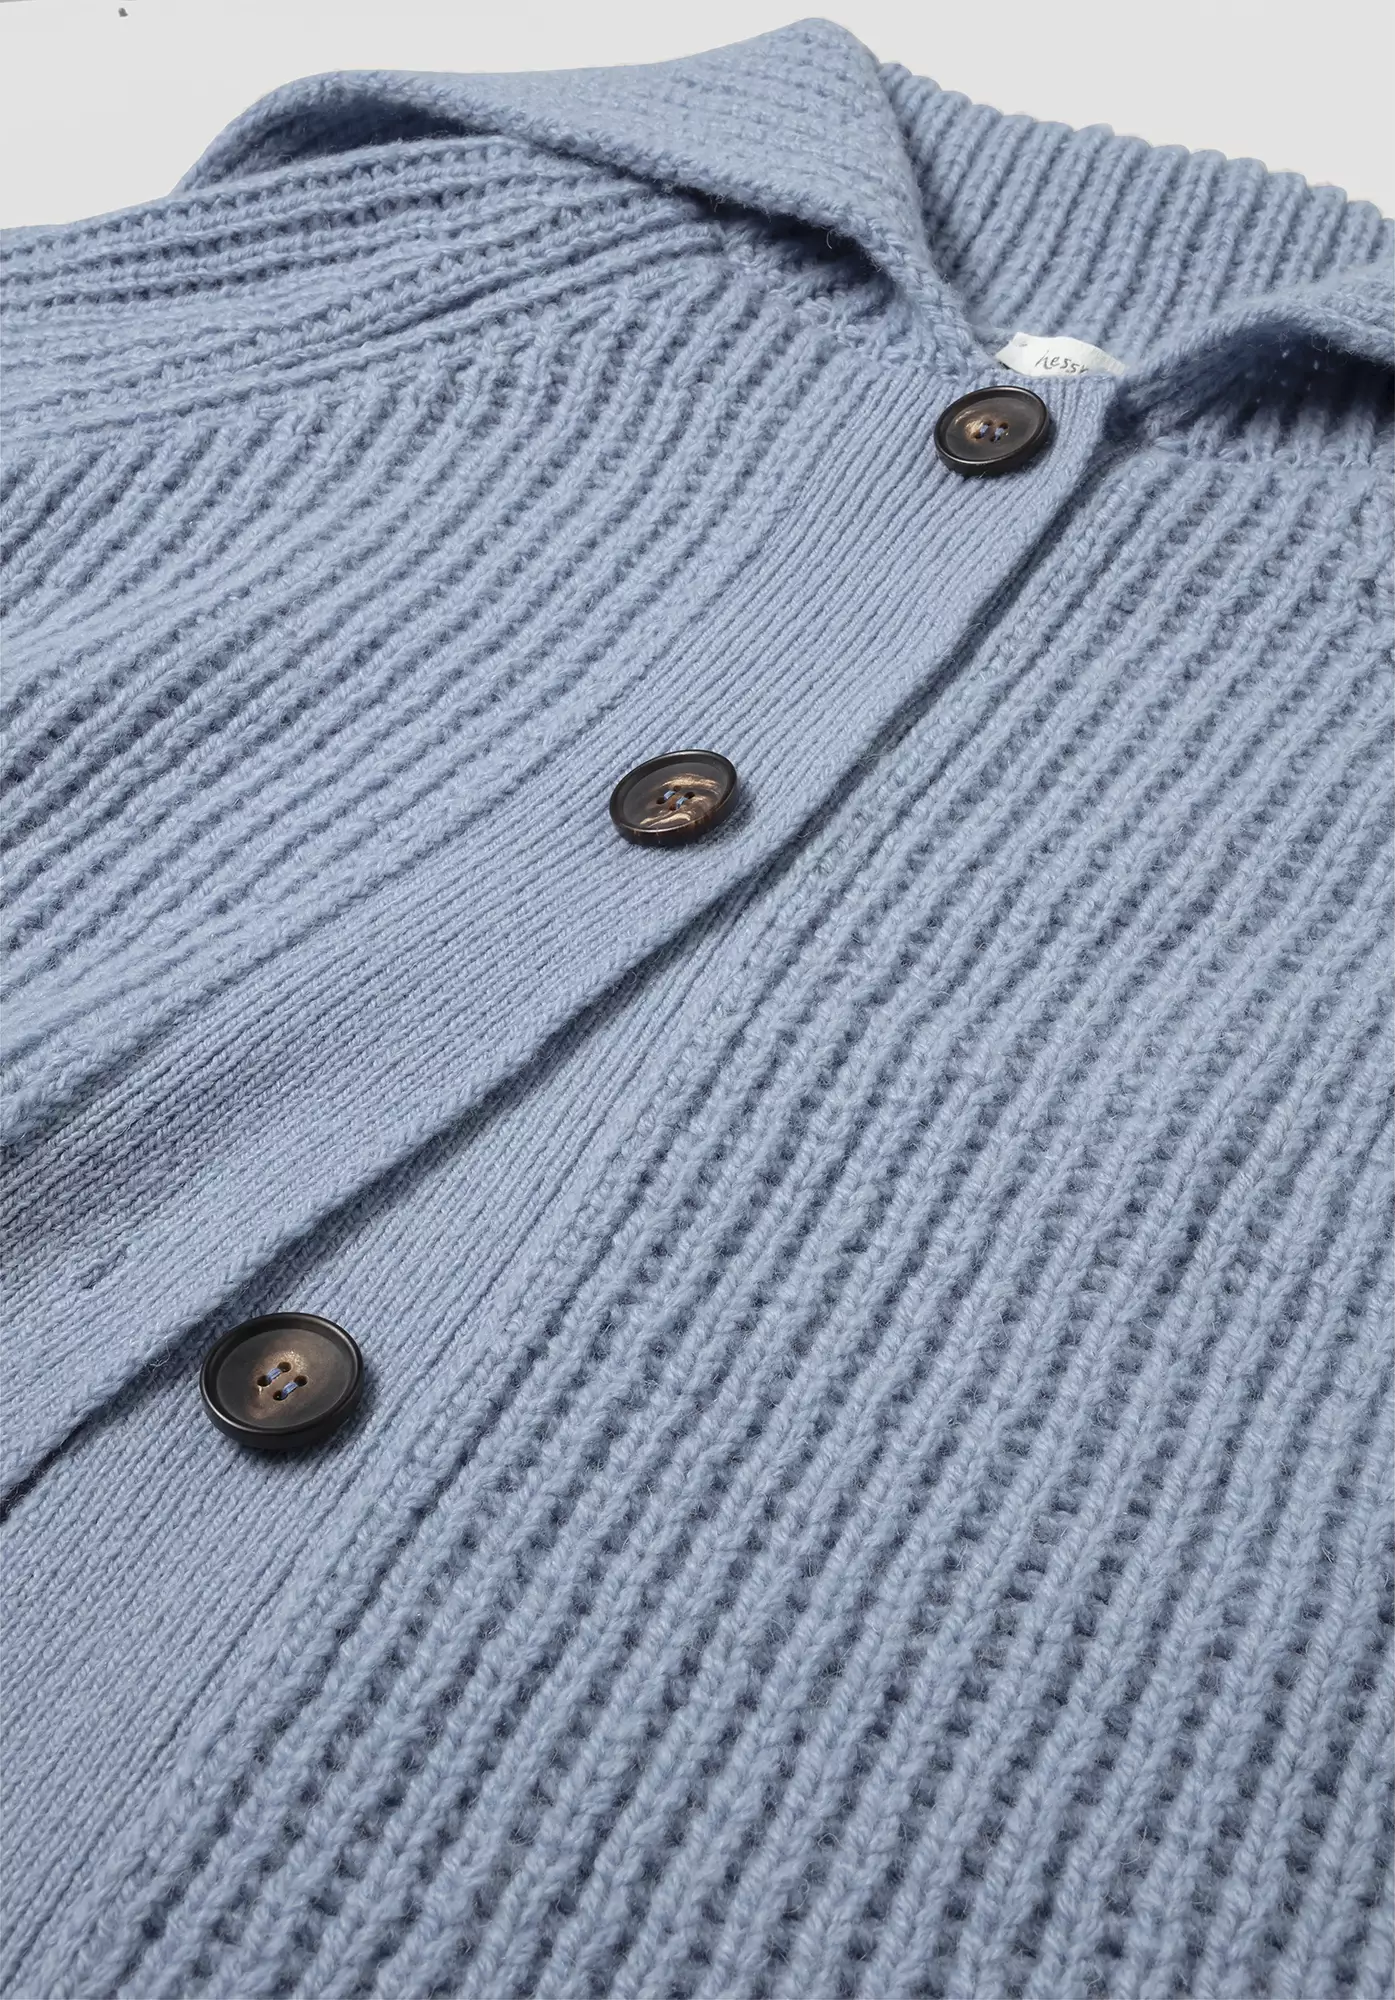 Cardigan made of pure merino wool - 5